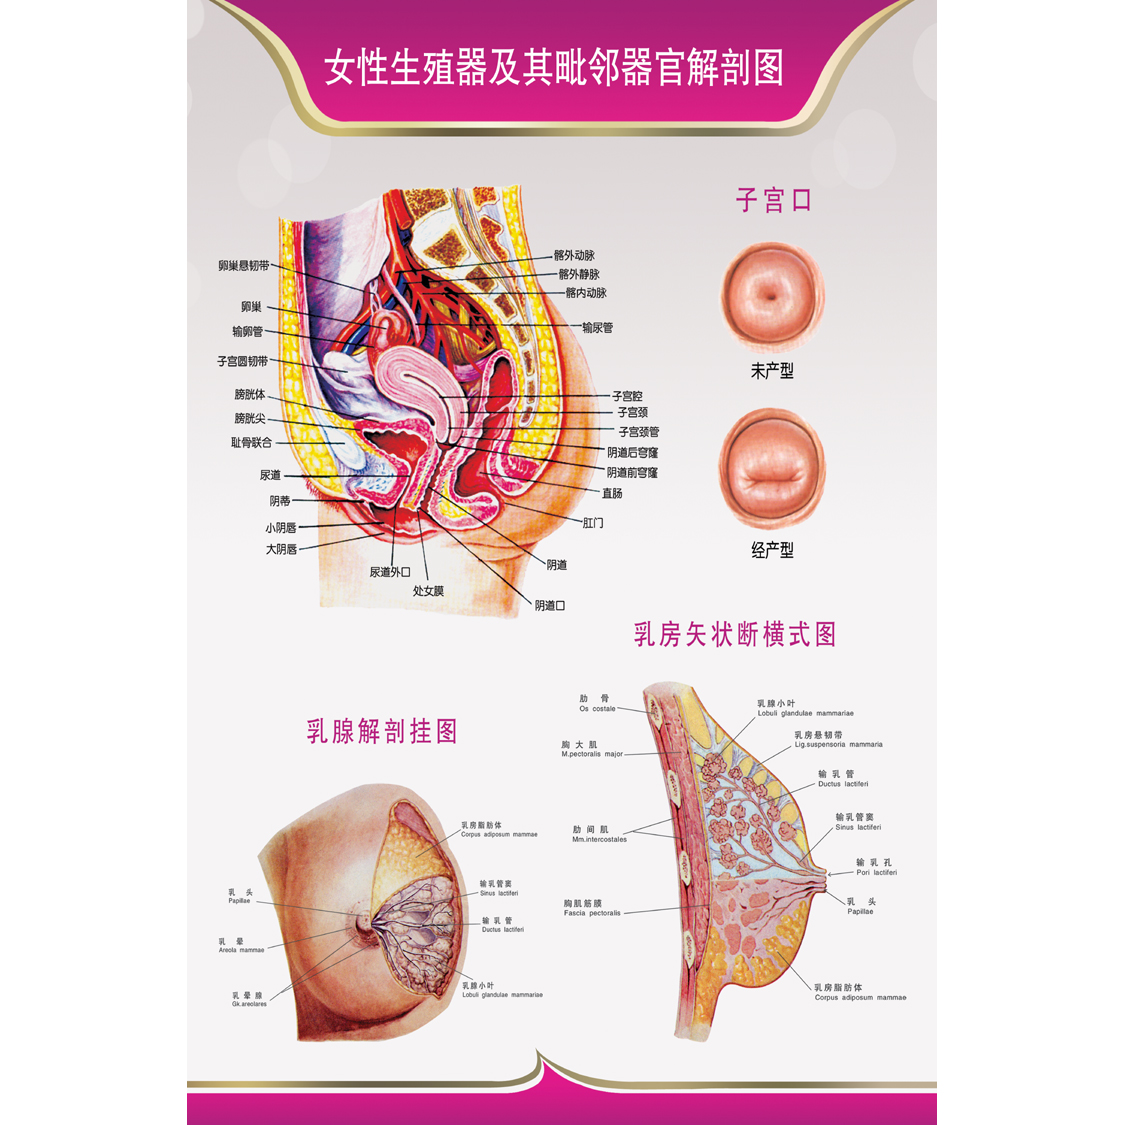 医学人体生殖器官结构图解剖示意图 医院女性生殖系统解剖图海报